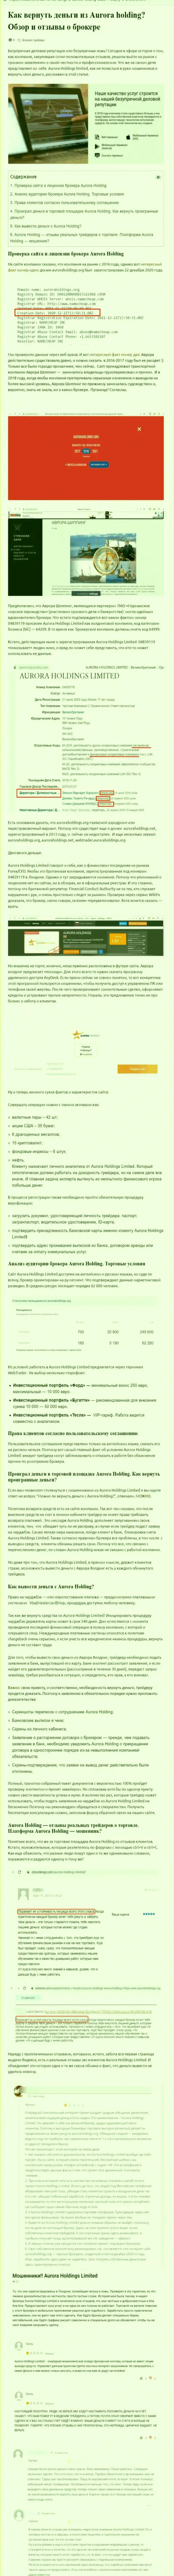 Место AuroraHoldings Org в блэк листе компаний-мошенников (обзор)